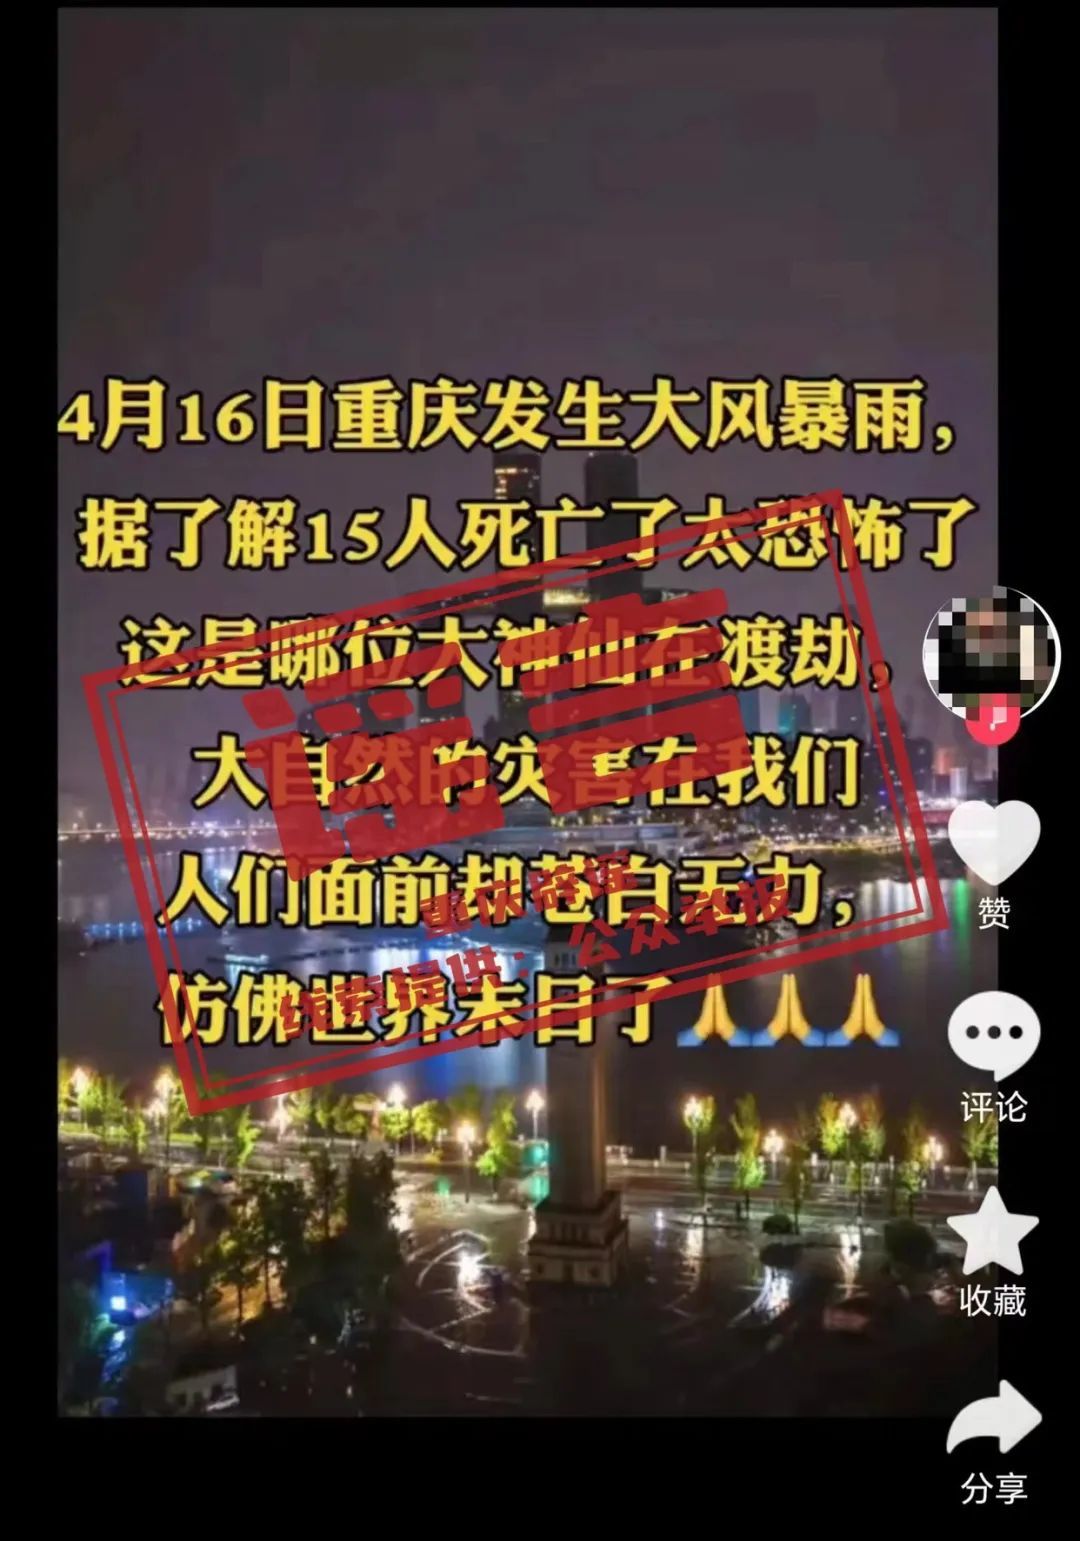 重庆发生大风暴雨15人死亡？ 官方回应：谣言！无人因灾死亡